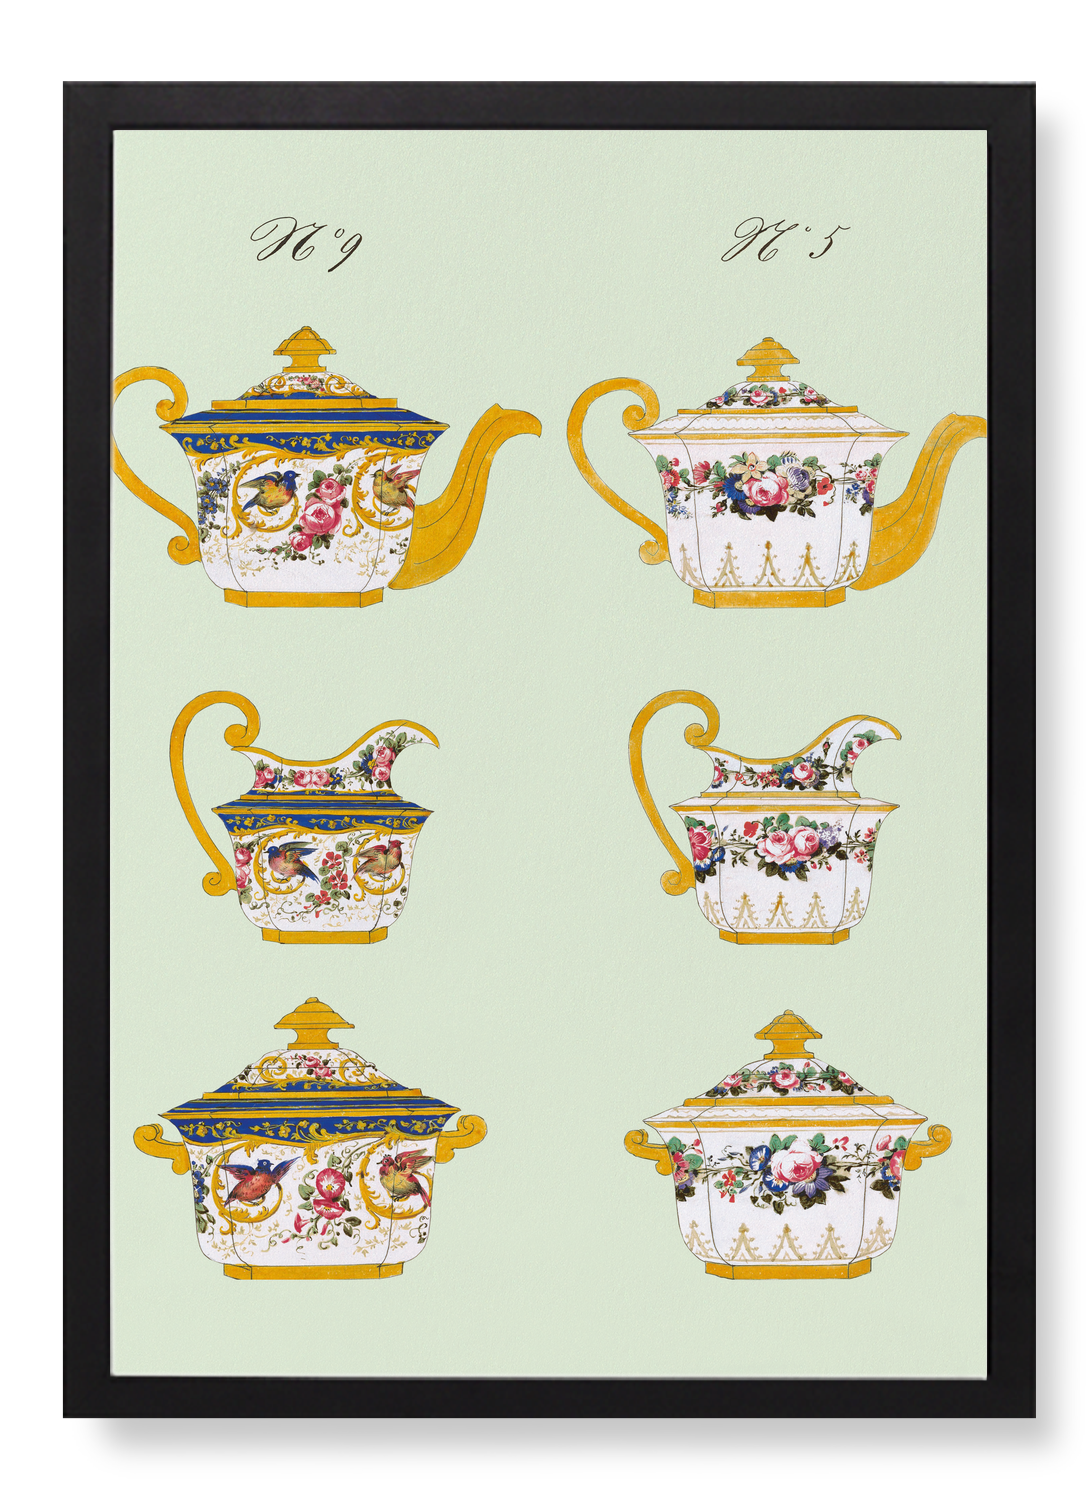 FRENCH TEA SET E (C. 1825-1850)